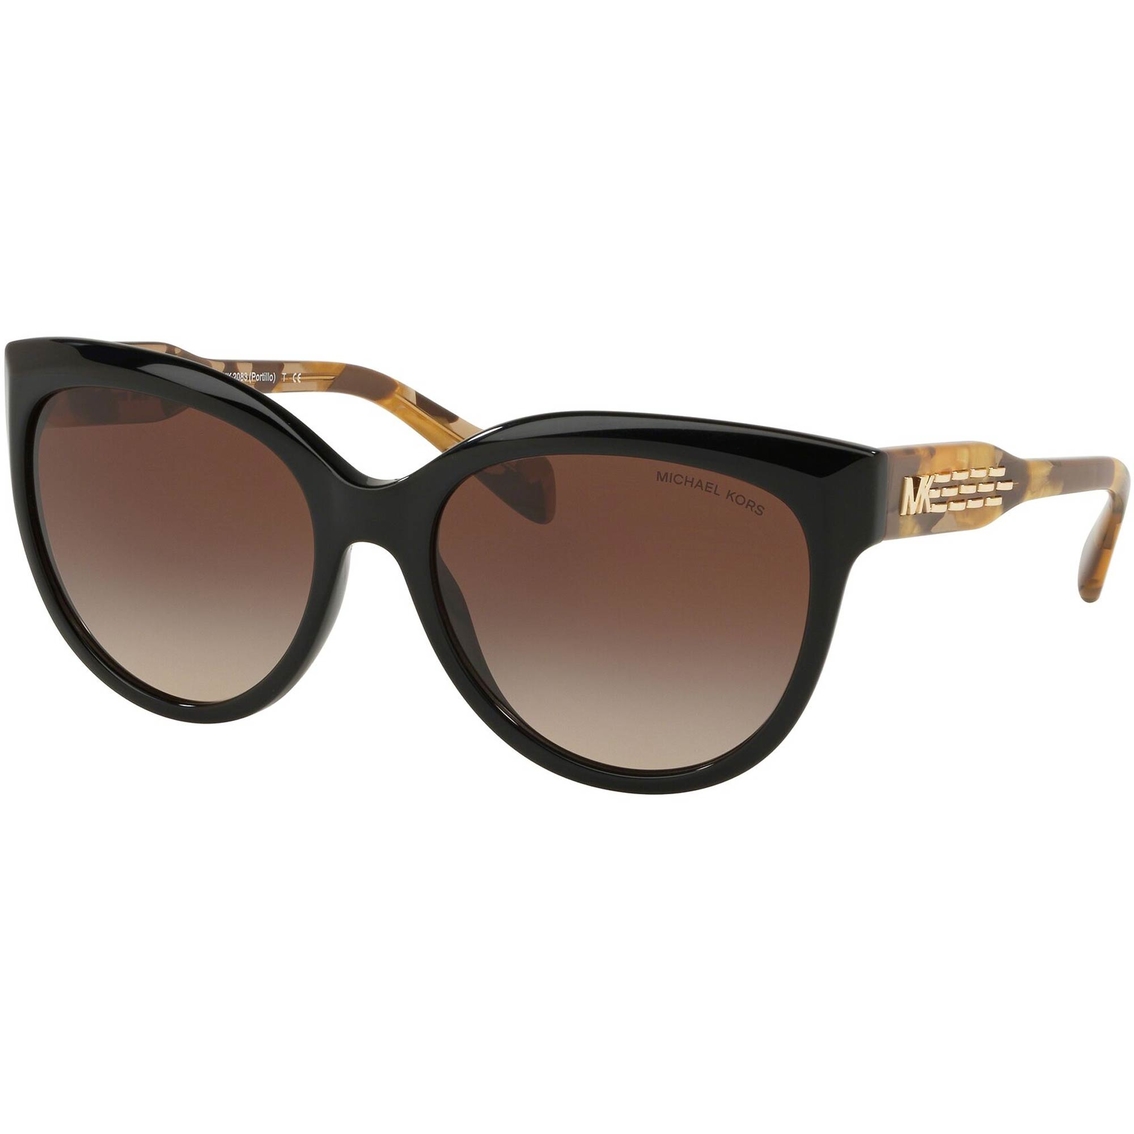 Michael Kors Round Smoke Gradient Sunglasses 0mk2083300513 | Women's ...